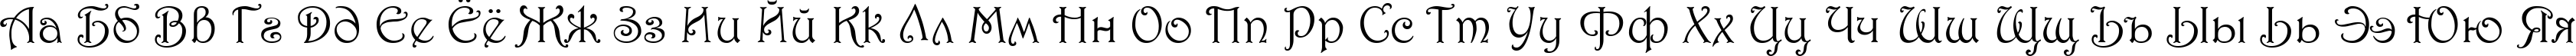 Пример написания русского алфавита шрифтом 1 Harrington M